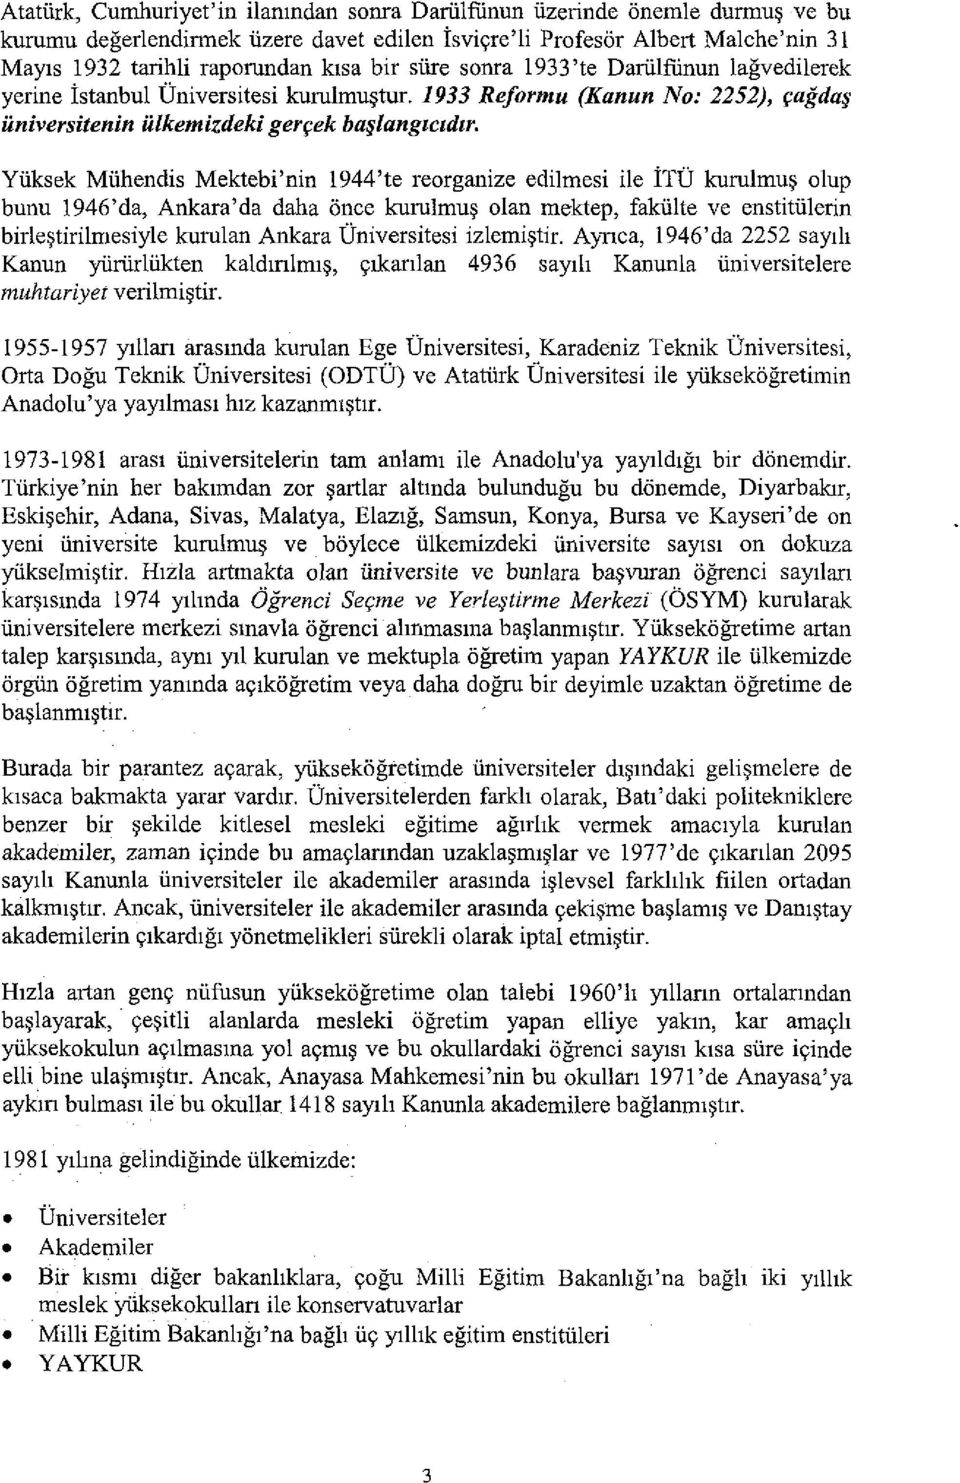 Yliksek Mlihendis Mektebi'nin 1944'te reorganize edi1mesi i1e ITU kuru1mu~ olup bunu 1946'da, Ankara'da daha once kuru1mu~ olan mektep, fakiilte ve enstitiilerin bir1e~tiri1mesiy1e kurulan Ankara